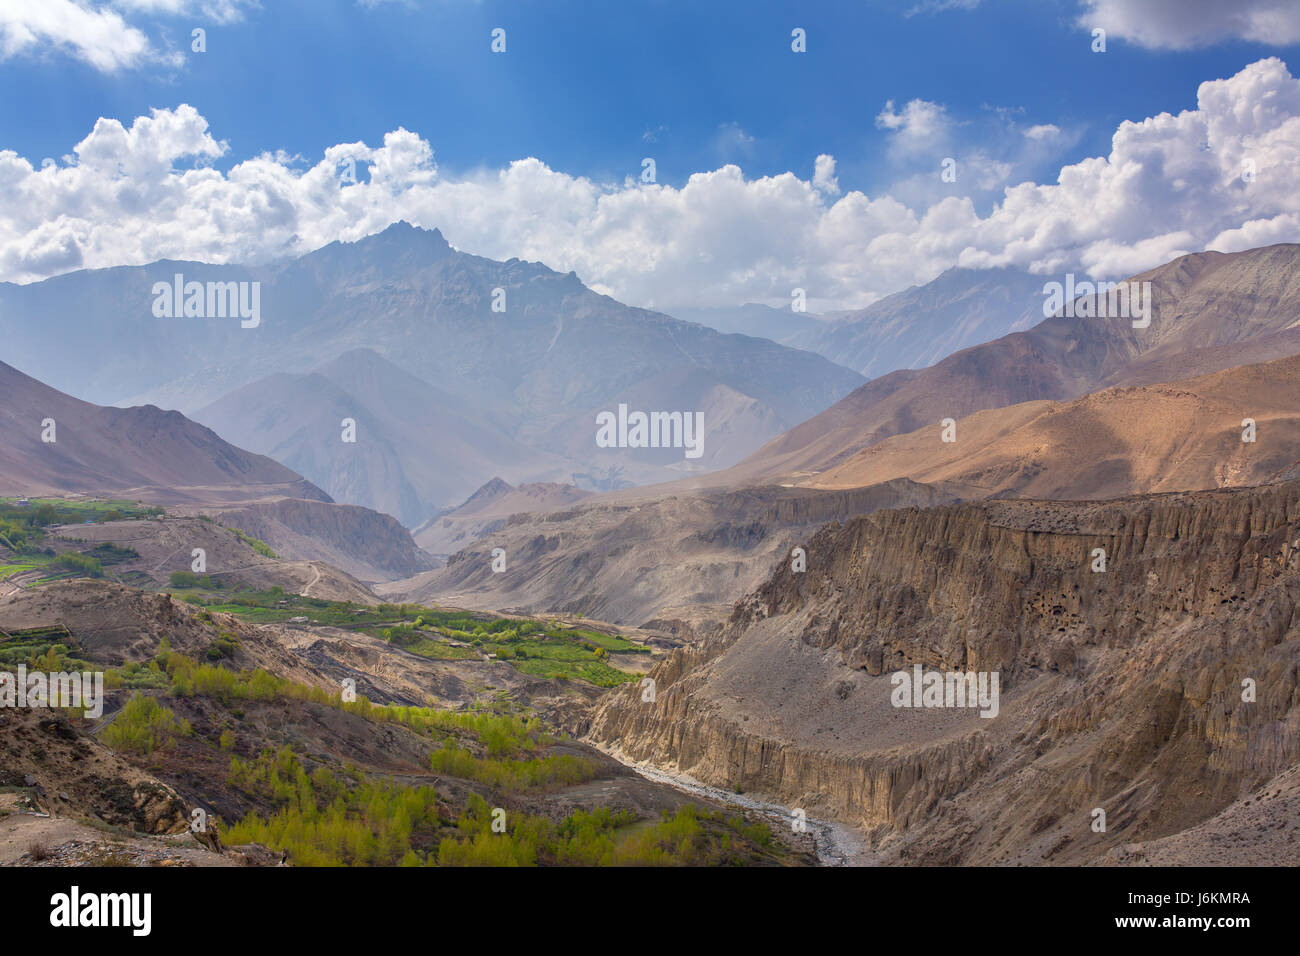 Magnifique paysage de montagne dans le district de Mustang inférieur, au Népal. Banque D'Images